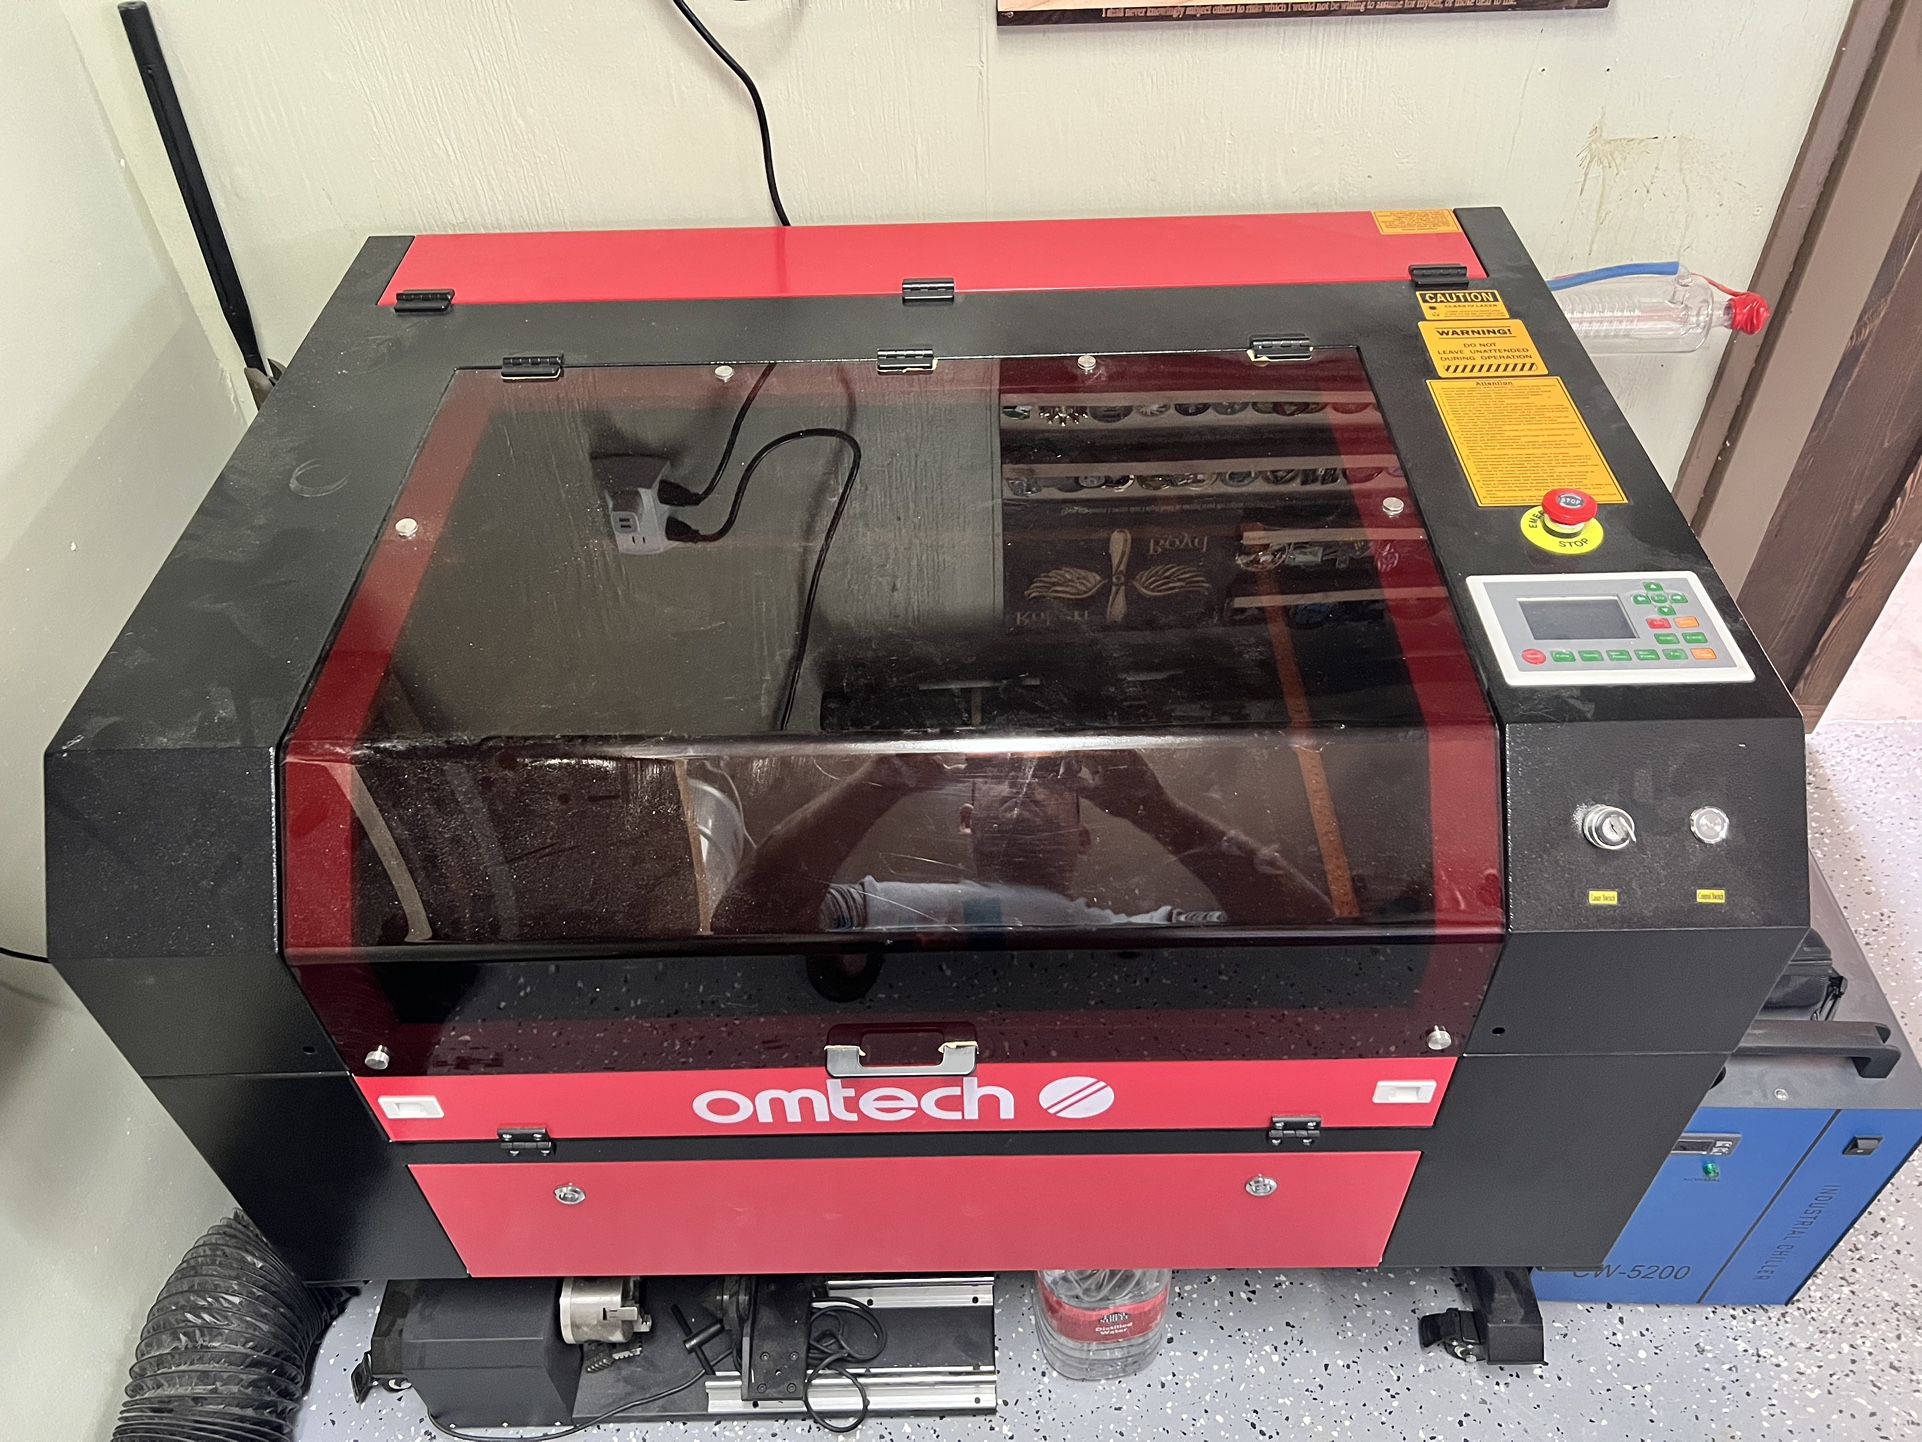 OMTECH Laser Engraver 80 Watt for Sale in El Cajon, CA - OfferUp